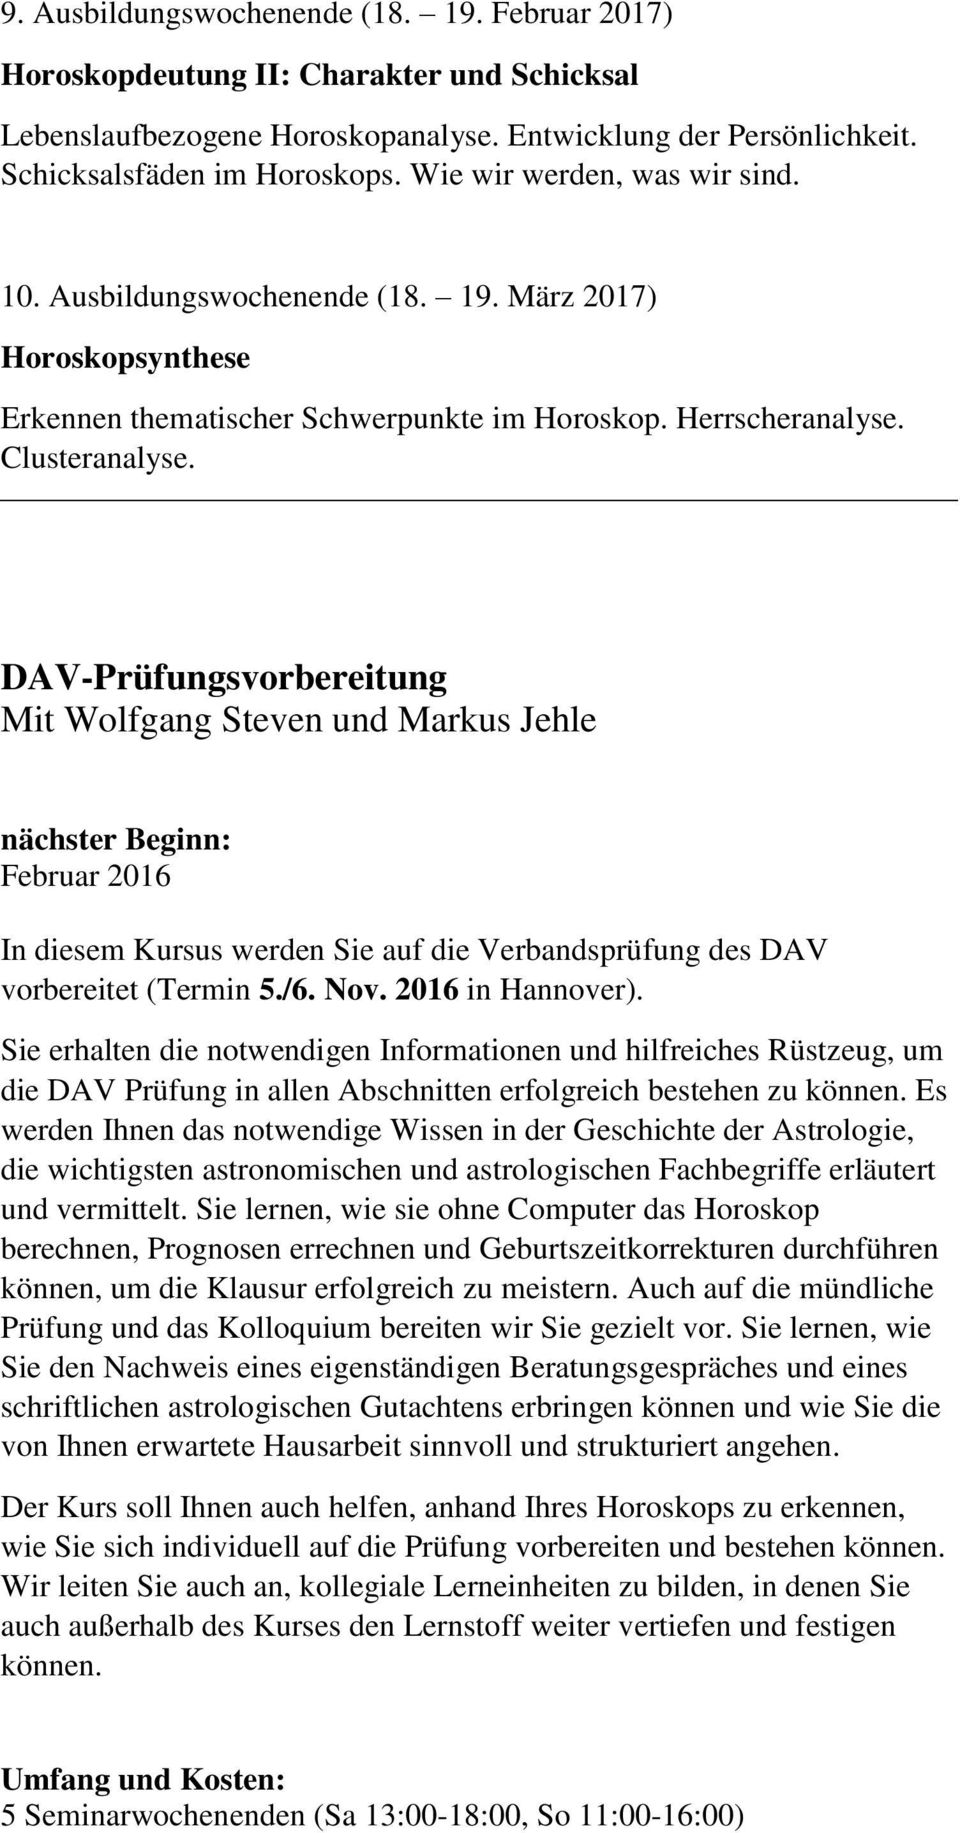 DAV-Prüfungsvorbereitung Mit Wolfgang Steven und Markus Jehle nächster Beginn: Februar 2016 In diesem Kursus werden Sie auf die Verbandsprüfung des DAV vorbereitet (Termin 5./6. Nov.